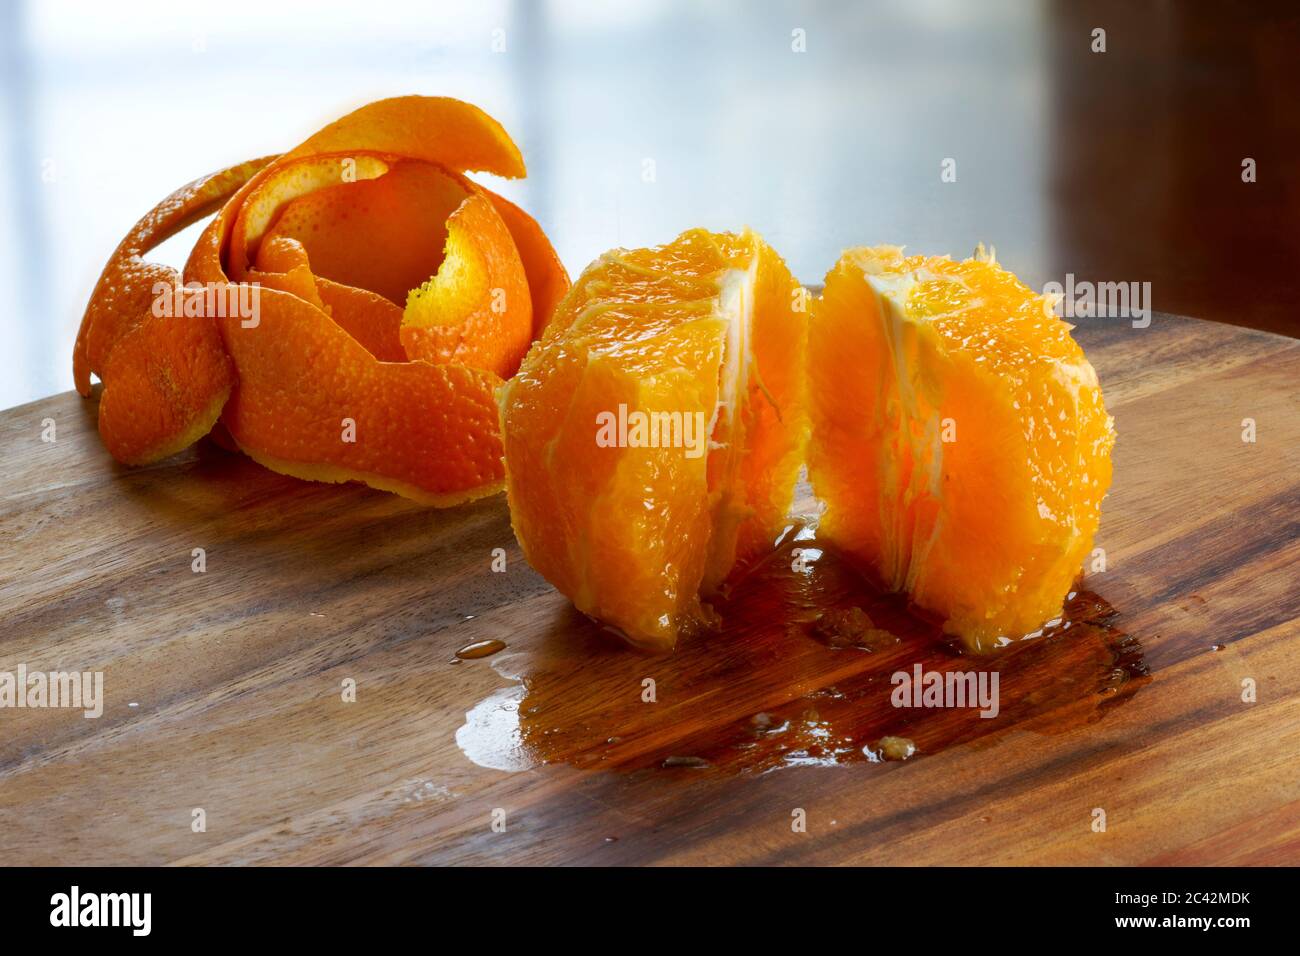 Un arancio pelato a metà posto su un tagliere di legno, retroilluminato con una luce della finestra. Il tavolo è bagnato dal succo d'arancia. Buccia d'arancia sul retro. Foto Stock